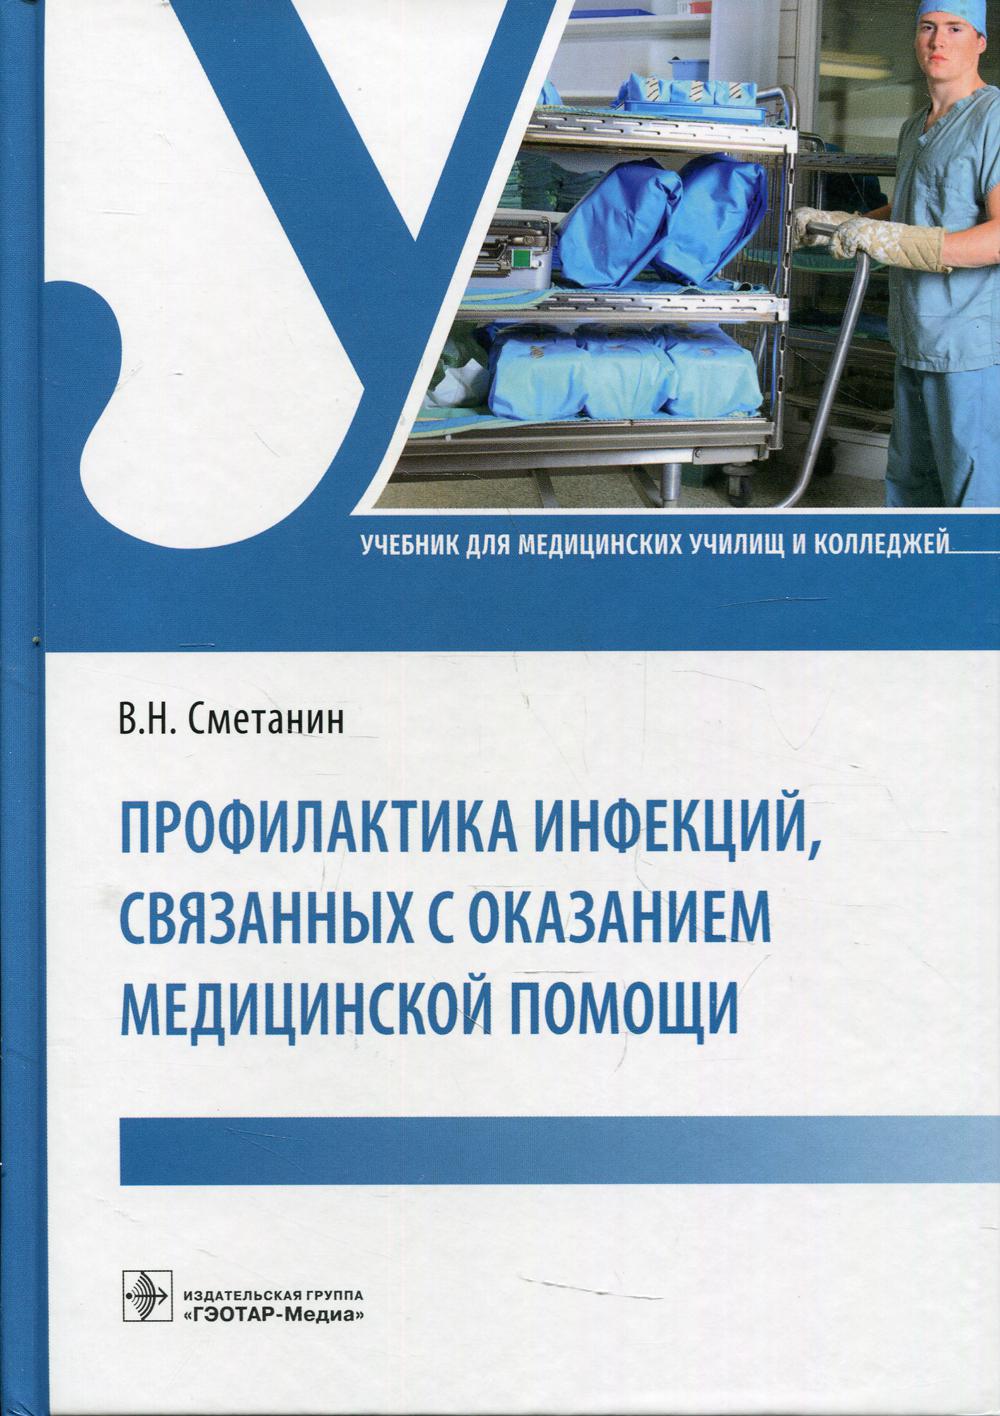 фото Книга профилактика инфекций, связанных с оказанием медицинской помощи гэотар-медиа